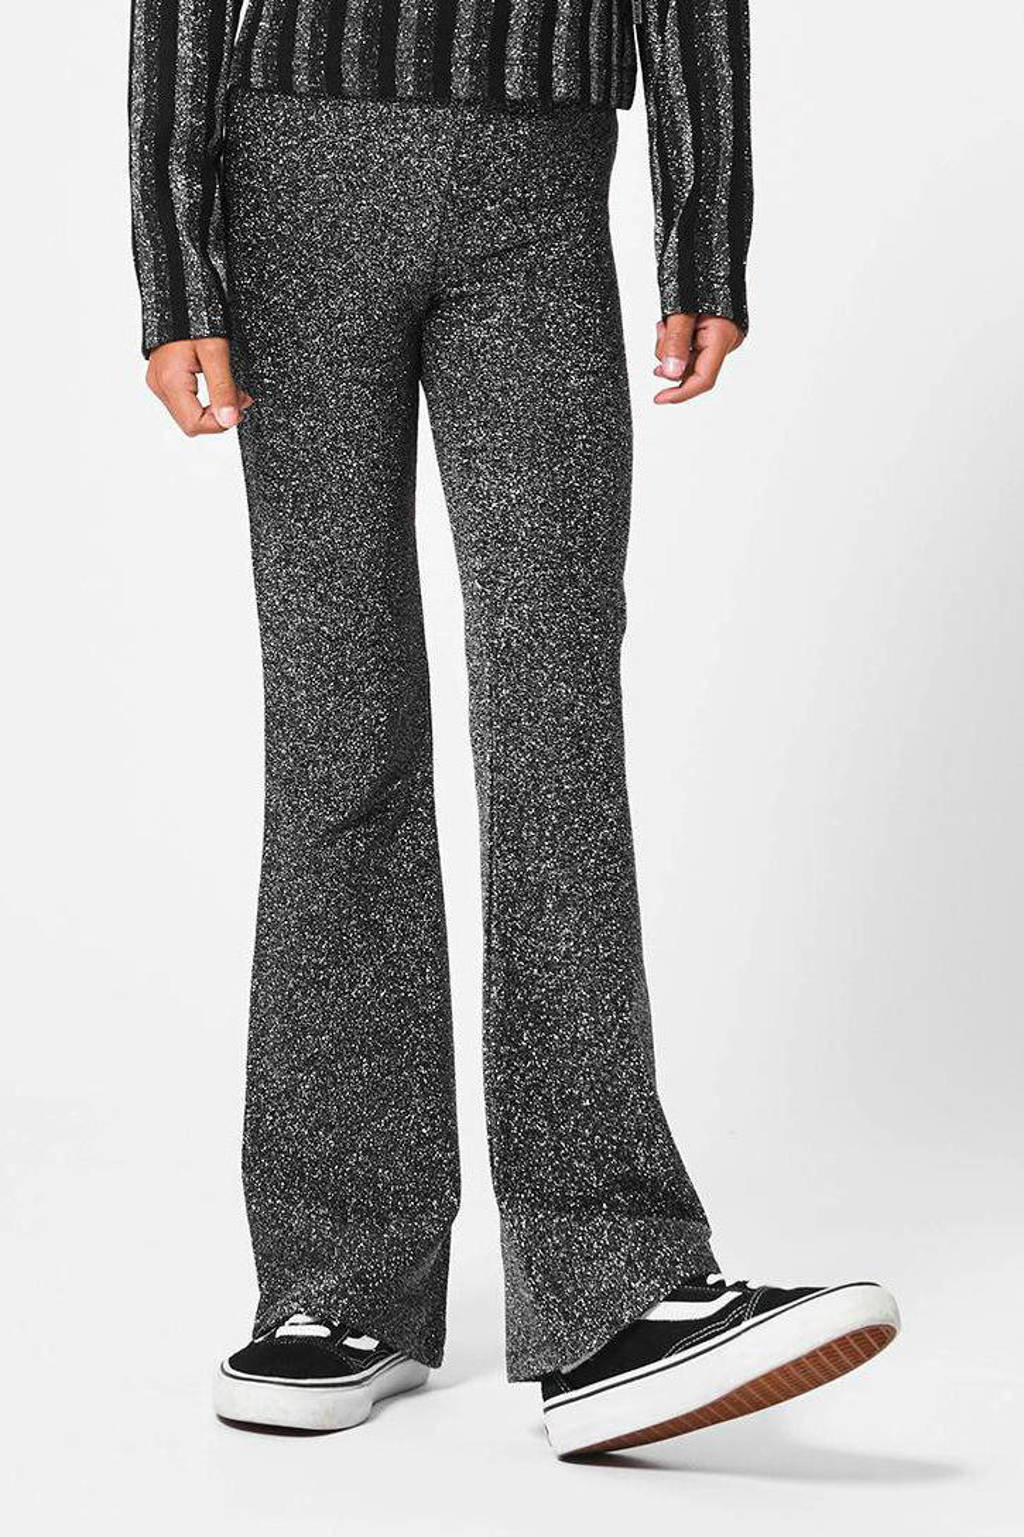 Zilverkleurige meisjes America Today Junior broek Charly 32 inch van polyester met regular waist